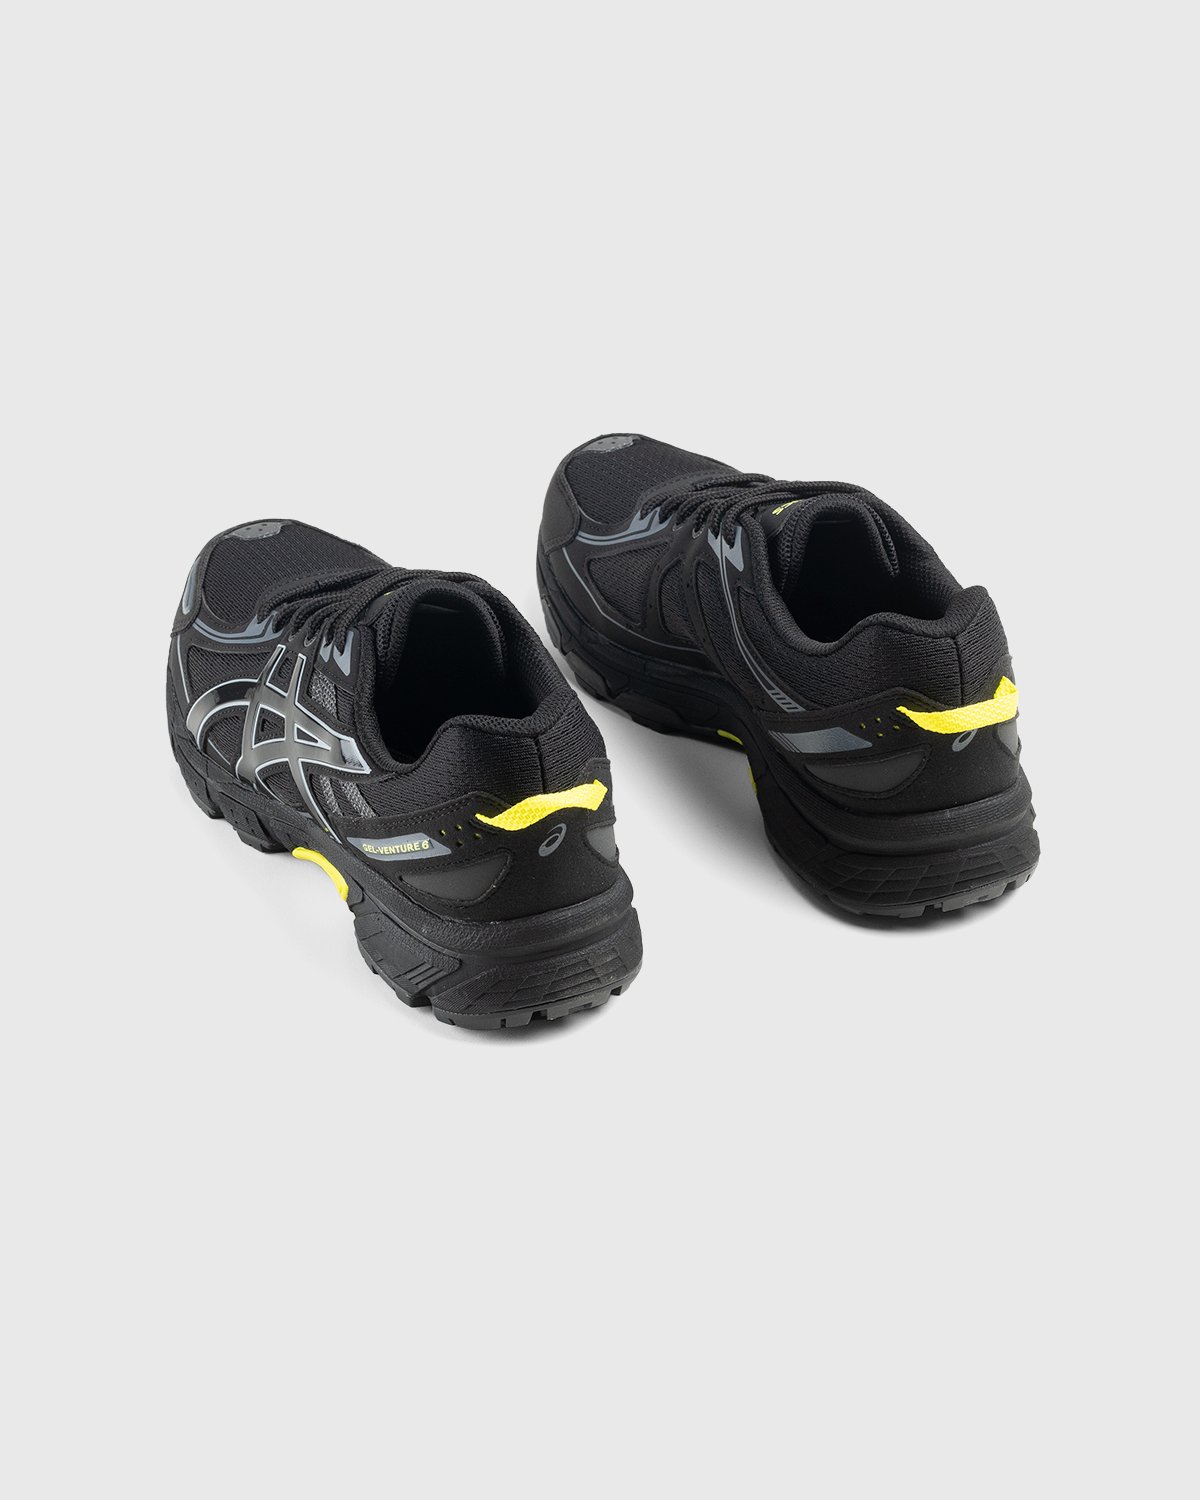 asics - Gel-Venture 6 Black/Black - Footwear - Black - Image 4